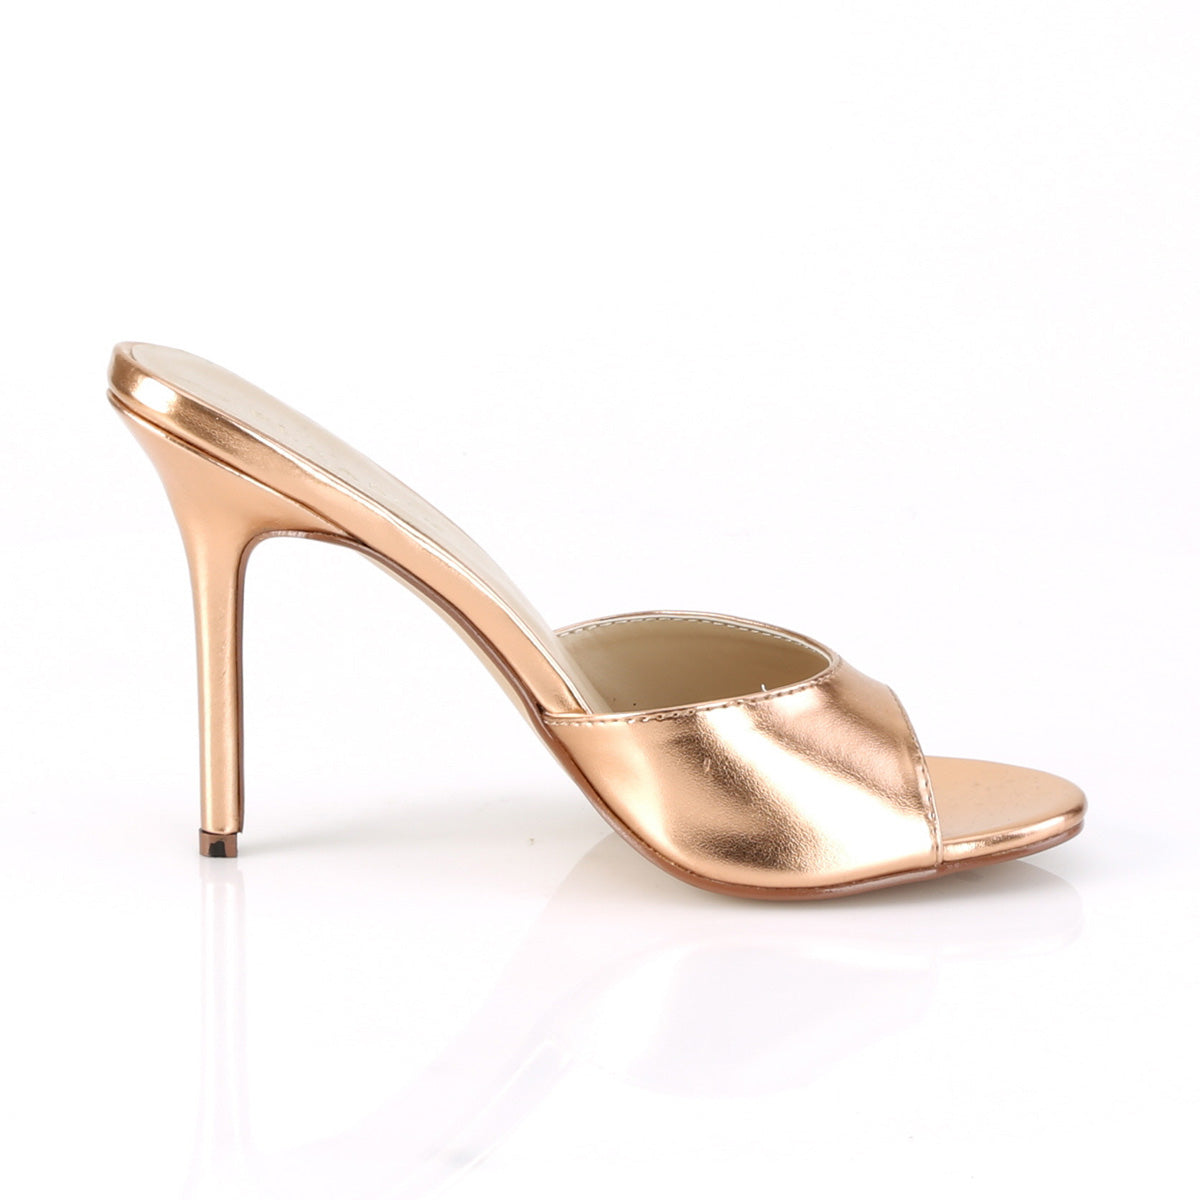 CLASSIQUE-01 4" Heel Rose Gold Metallic Fetish Footwear-Pleaser- Sexy Shoes Fetish Heels